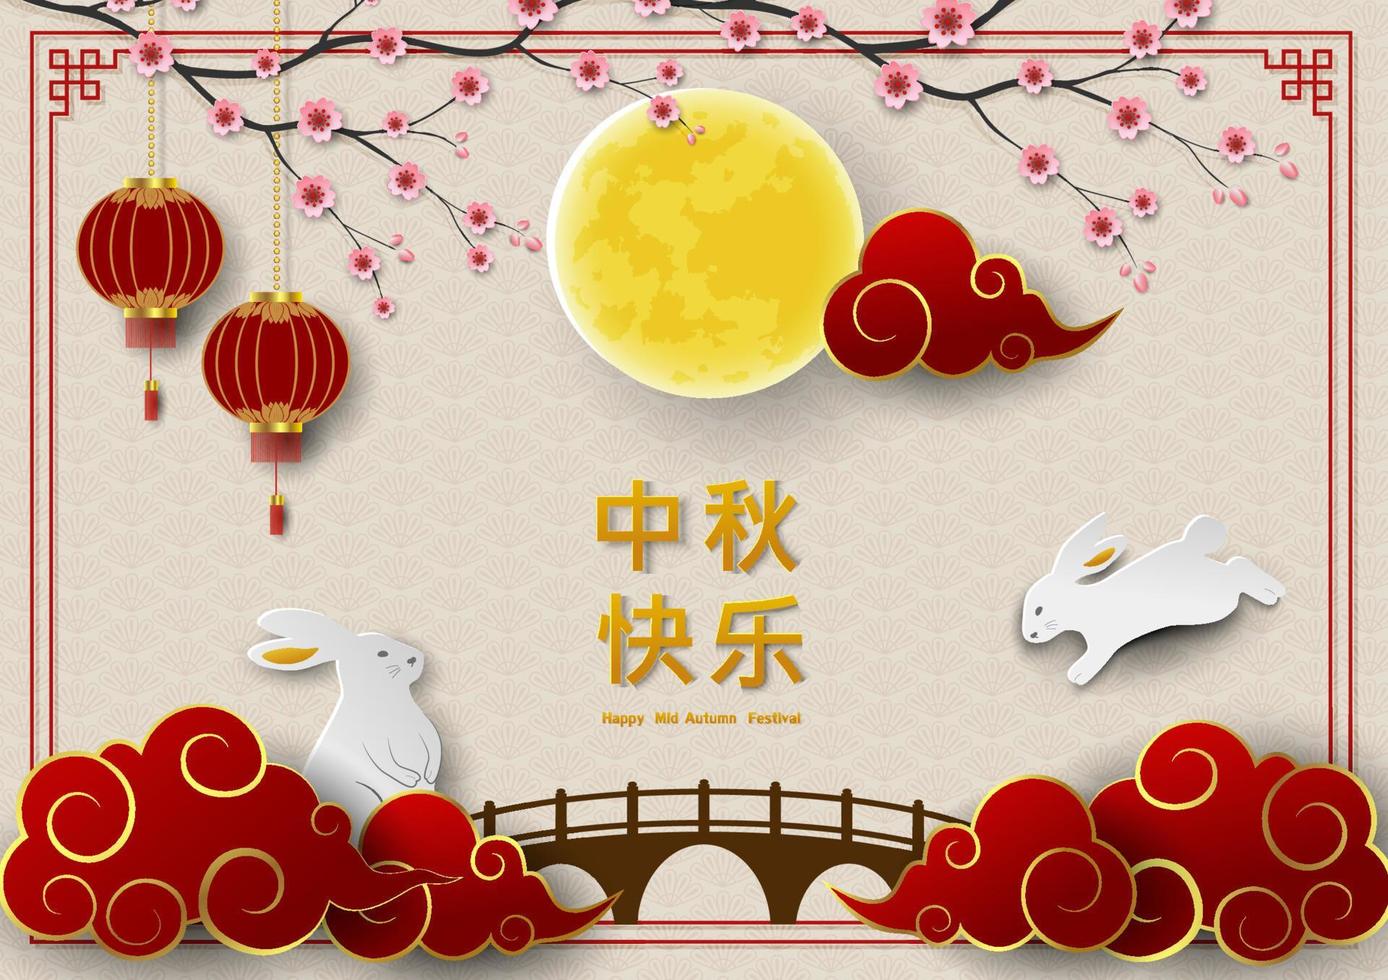 meio outono festival ou lua festival cumprimento cartão com coelhos, cheios lua e nuvem em ásia estilo, chinês traduzir significar meio outono festival vetor